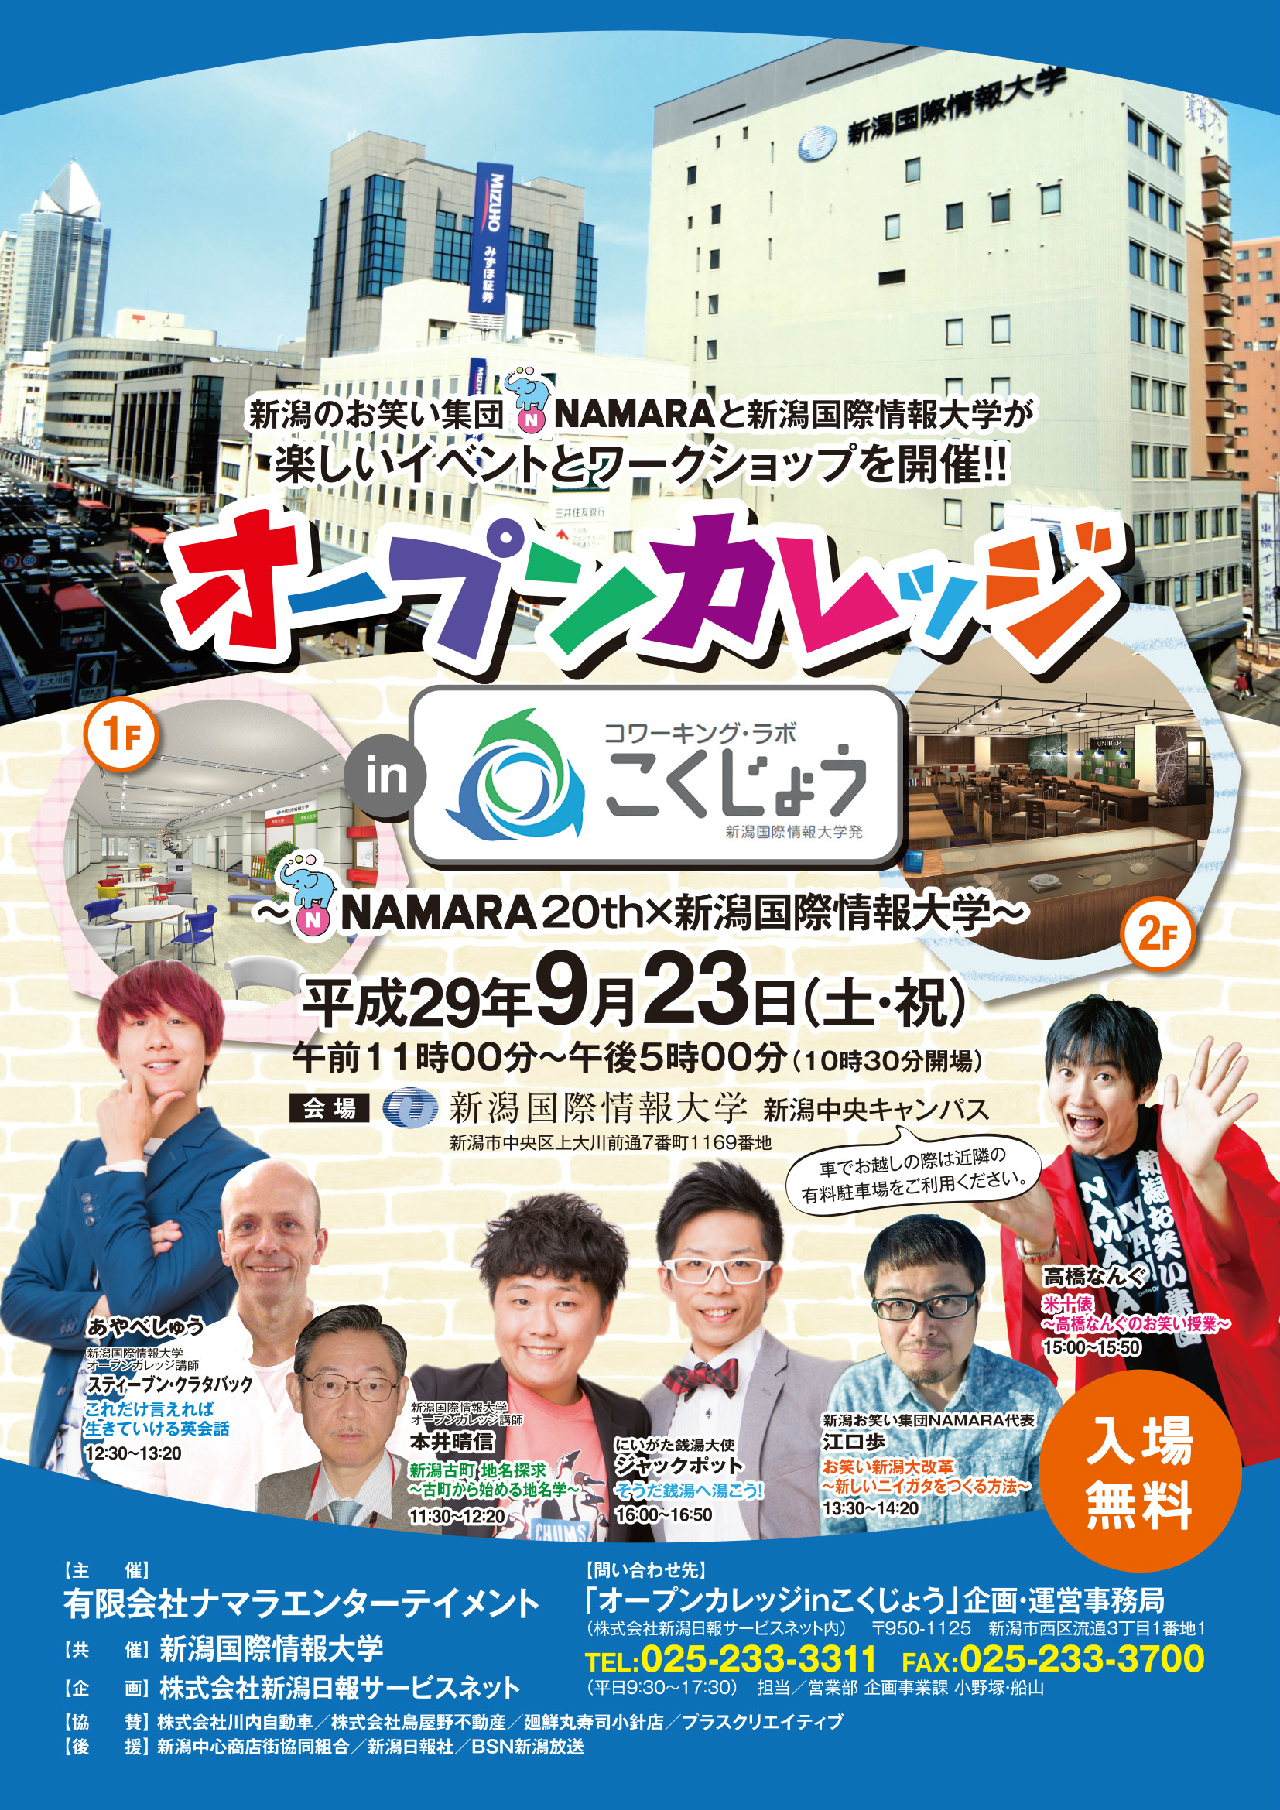 オープンカレッジinこくじょう Namara20th 新潟国際情報大学 開催について 新潟国際情報大学 つなぐ つなげる つながる